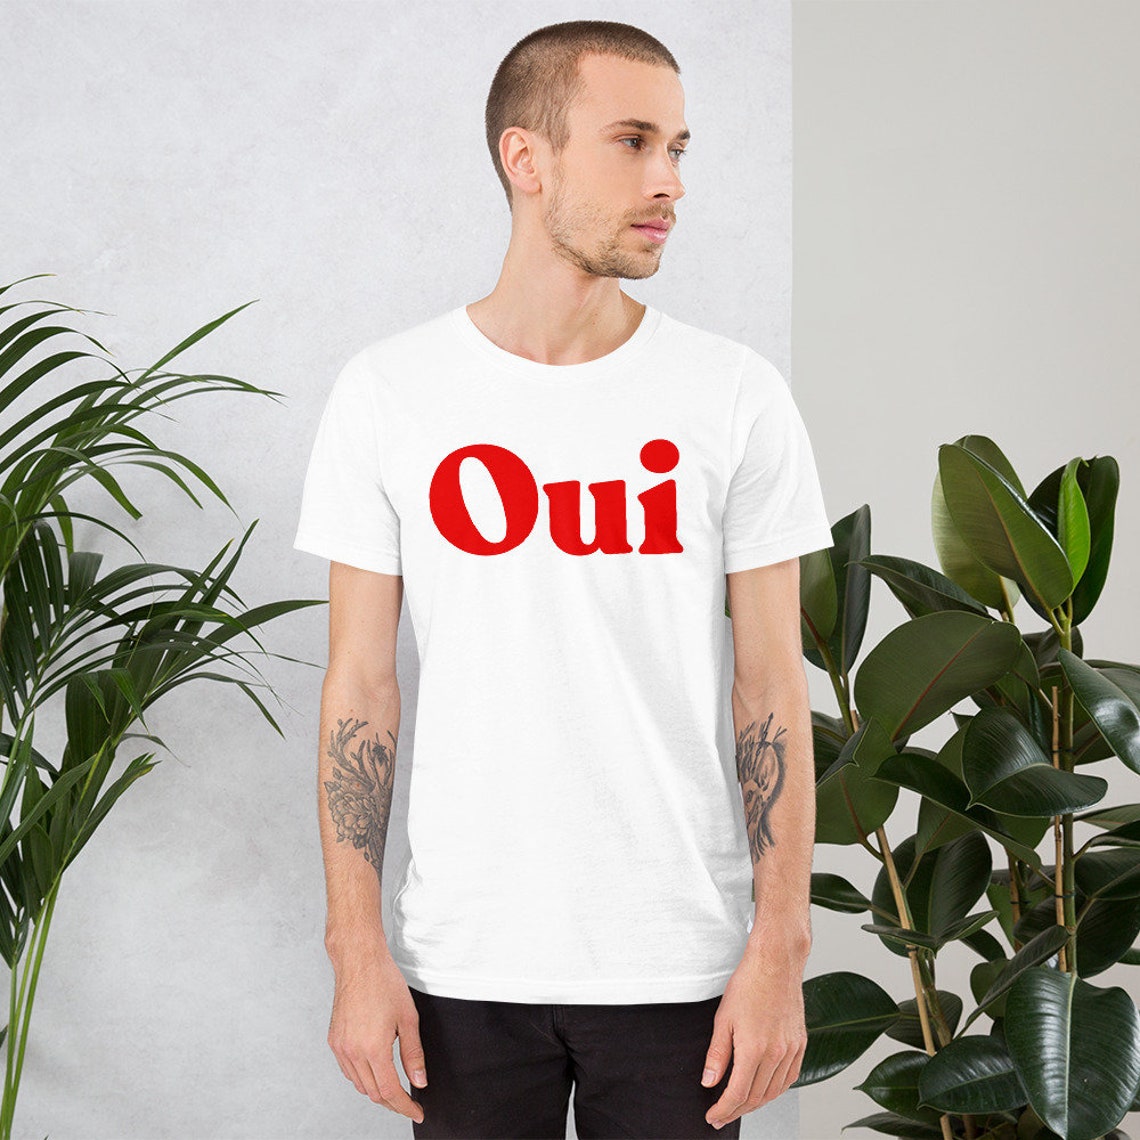 Oui T Shirt Oui Tshirt French Shirt Women & Men French | Etsy